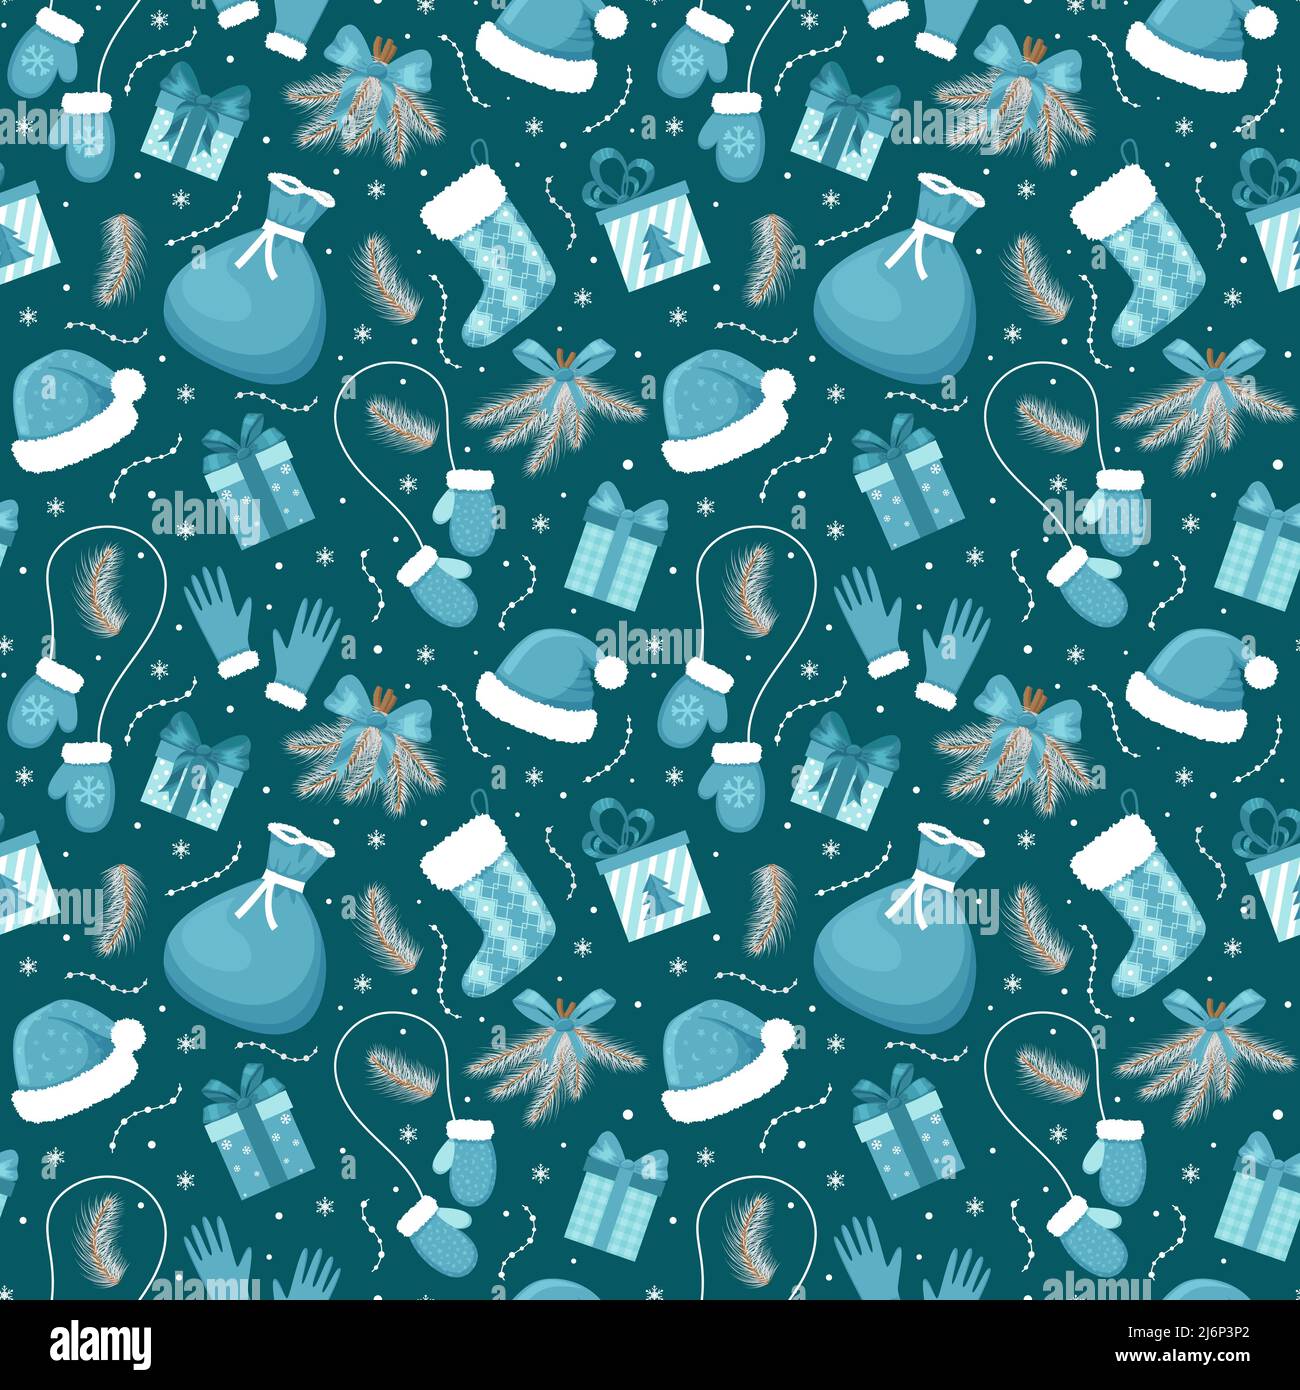 Nahtloses Muster mit weihnachtlichen Elementen in Blautönen auf dunkelblauem Hintergrund. Ideal zum Einpacken von Papier, Geschenkschachteln. Flache Objekte isoliert und verhallt Stock Vektor